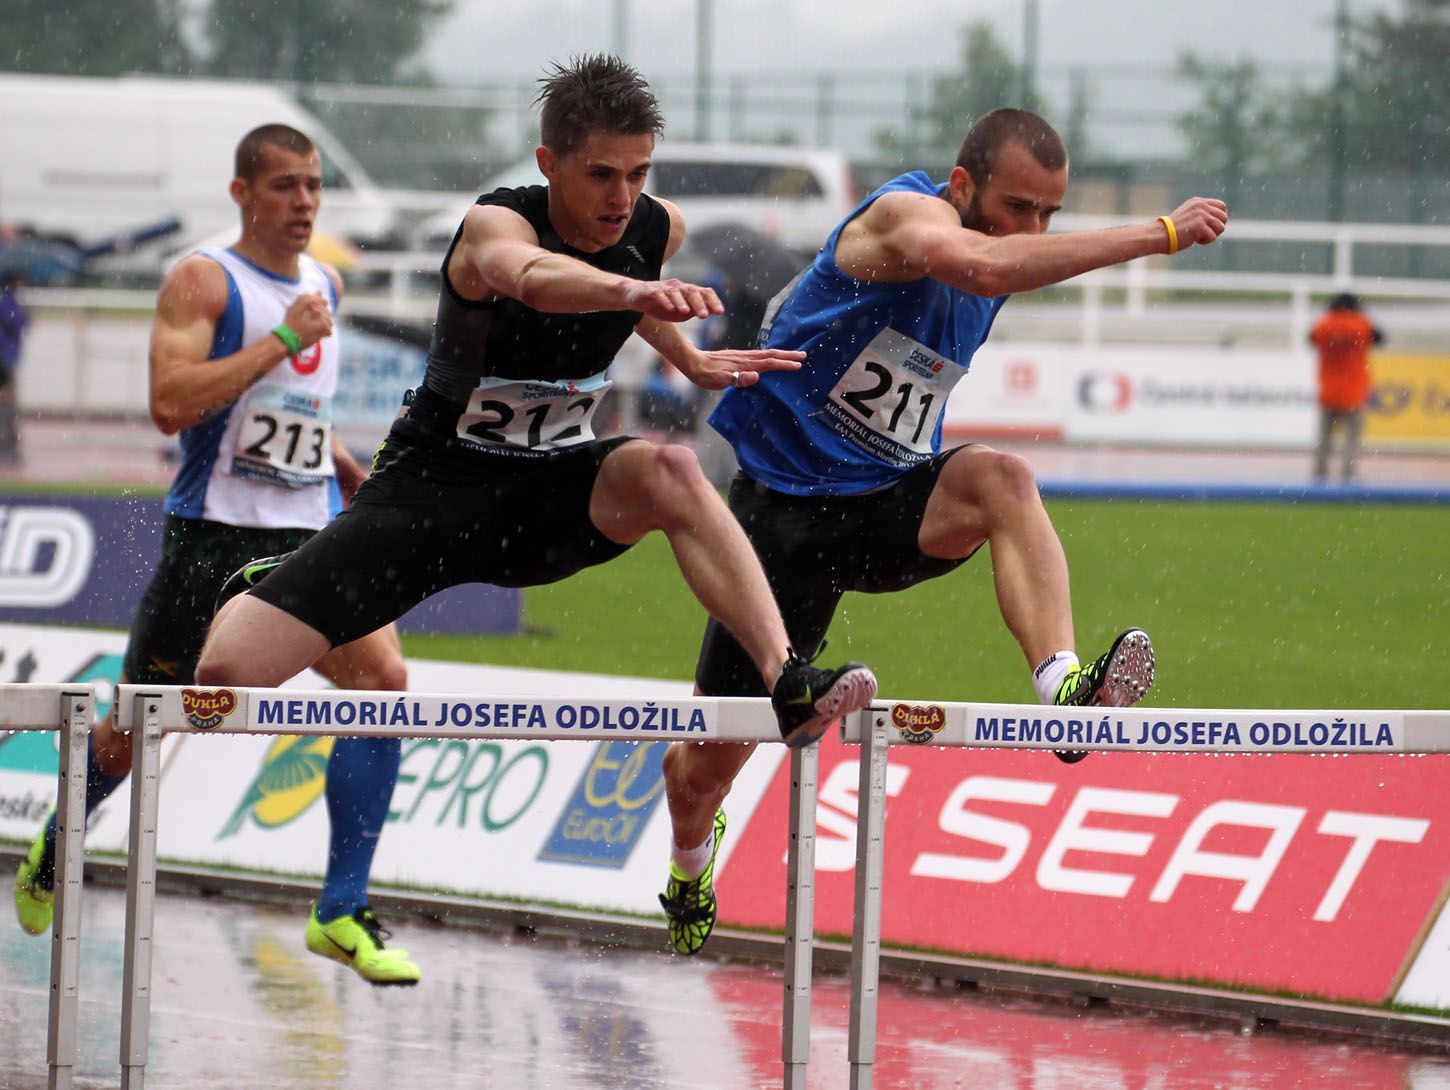 Atletka, Memoriál Josefa Odložila 2013, 400 m přek.: Lukáš Kožíšek (212), Jiří Stehno (211)